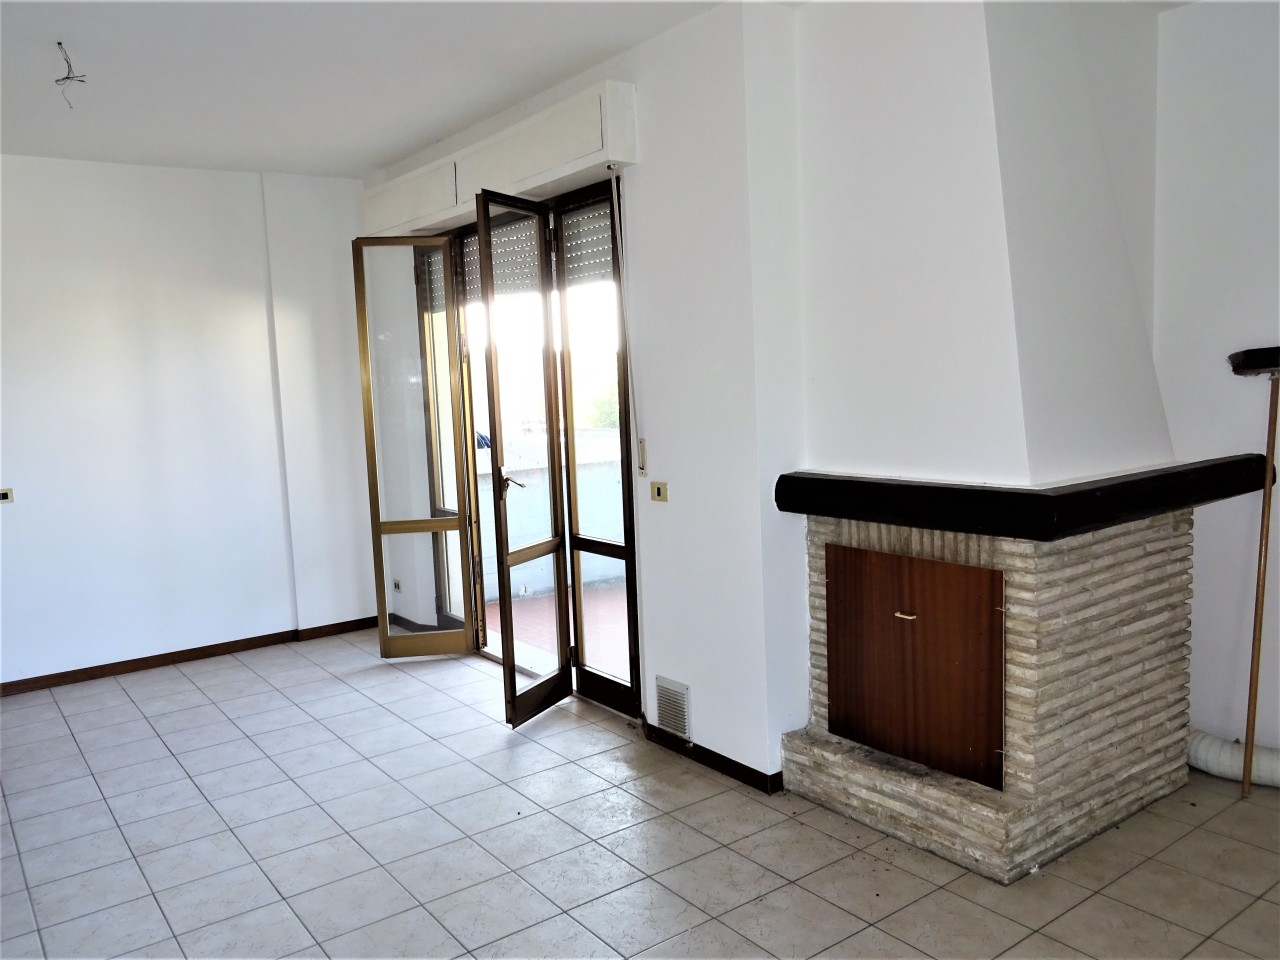 Appartamento in vendita a Montemarciano, 3 locali, prezzo € 75.000 | PortaleAgenzieImmobiliari.it